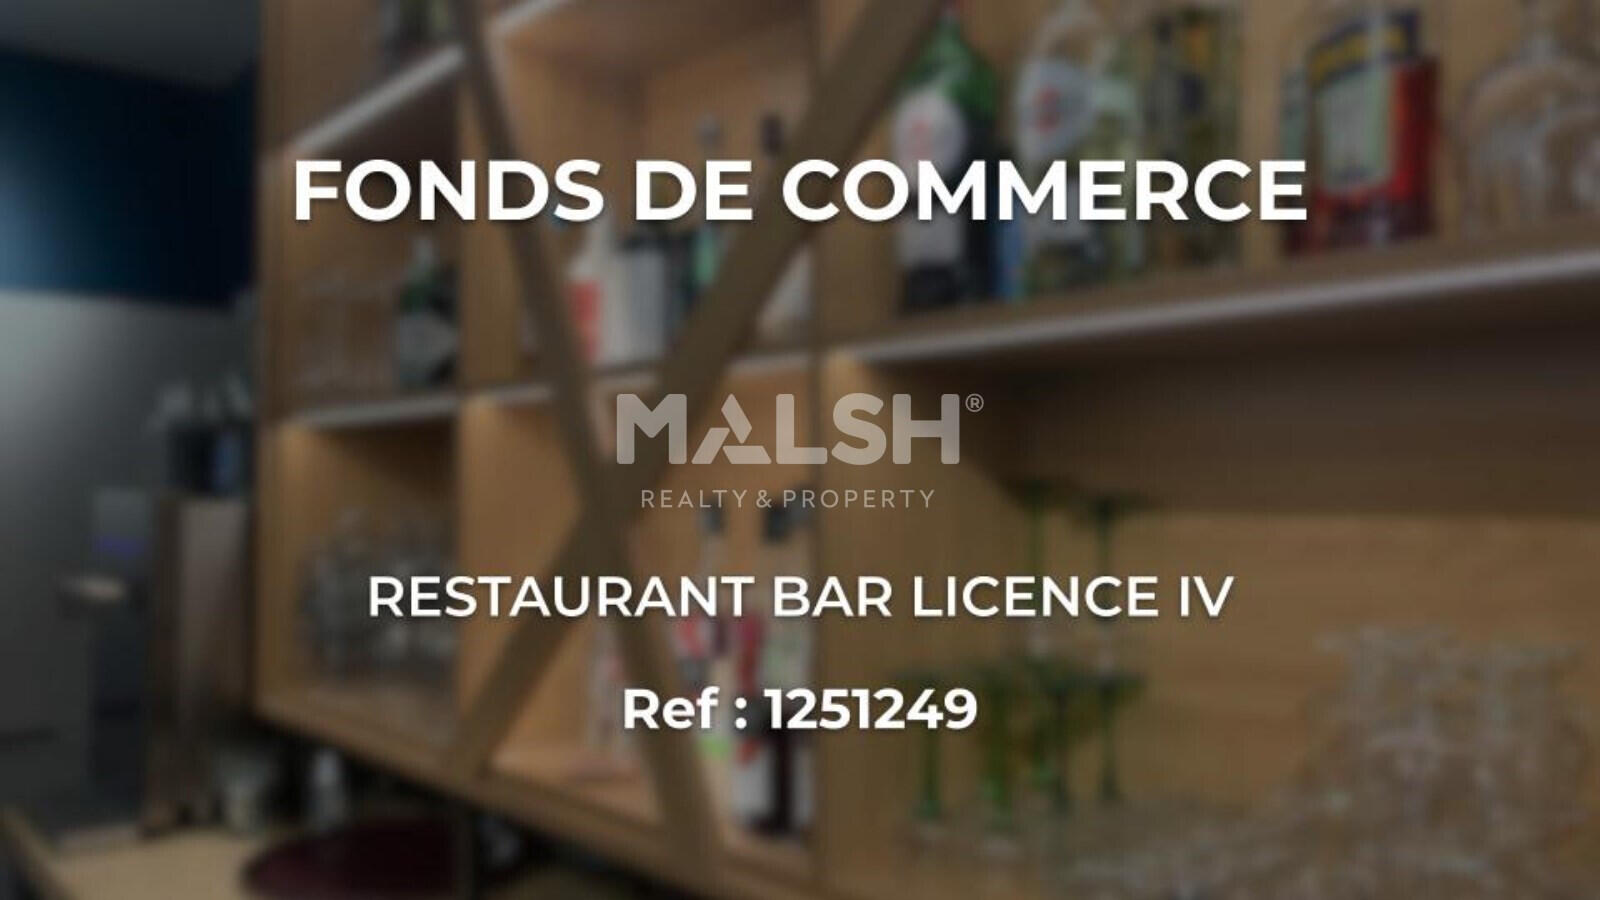 Vente fonds de commerce restaurant licence IV Lyon